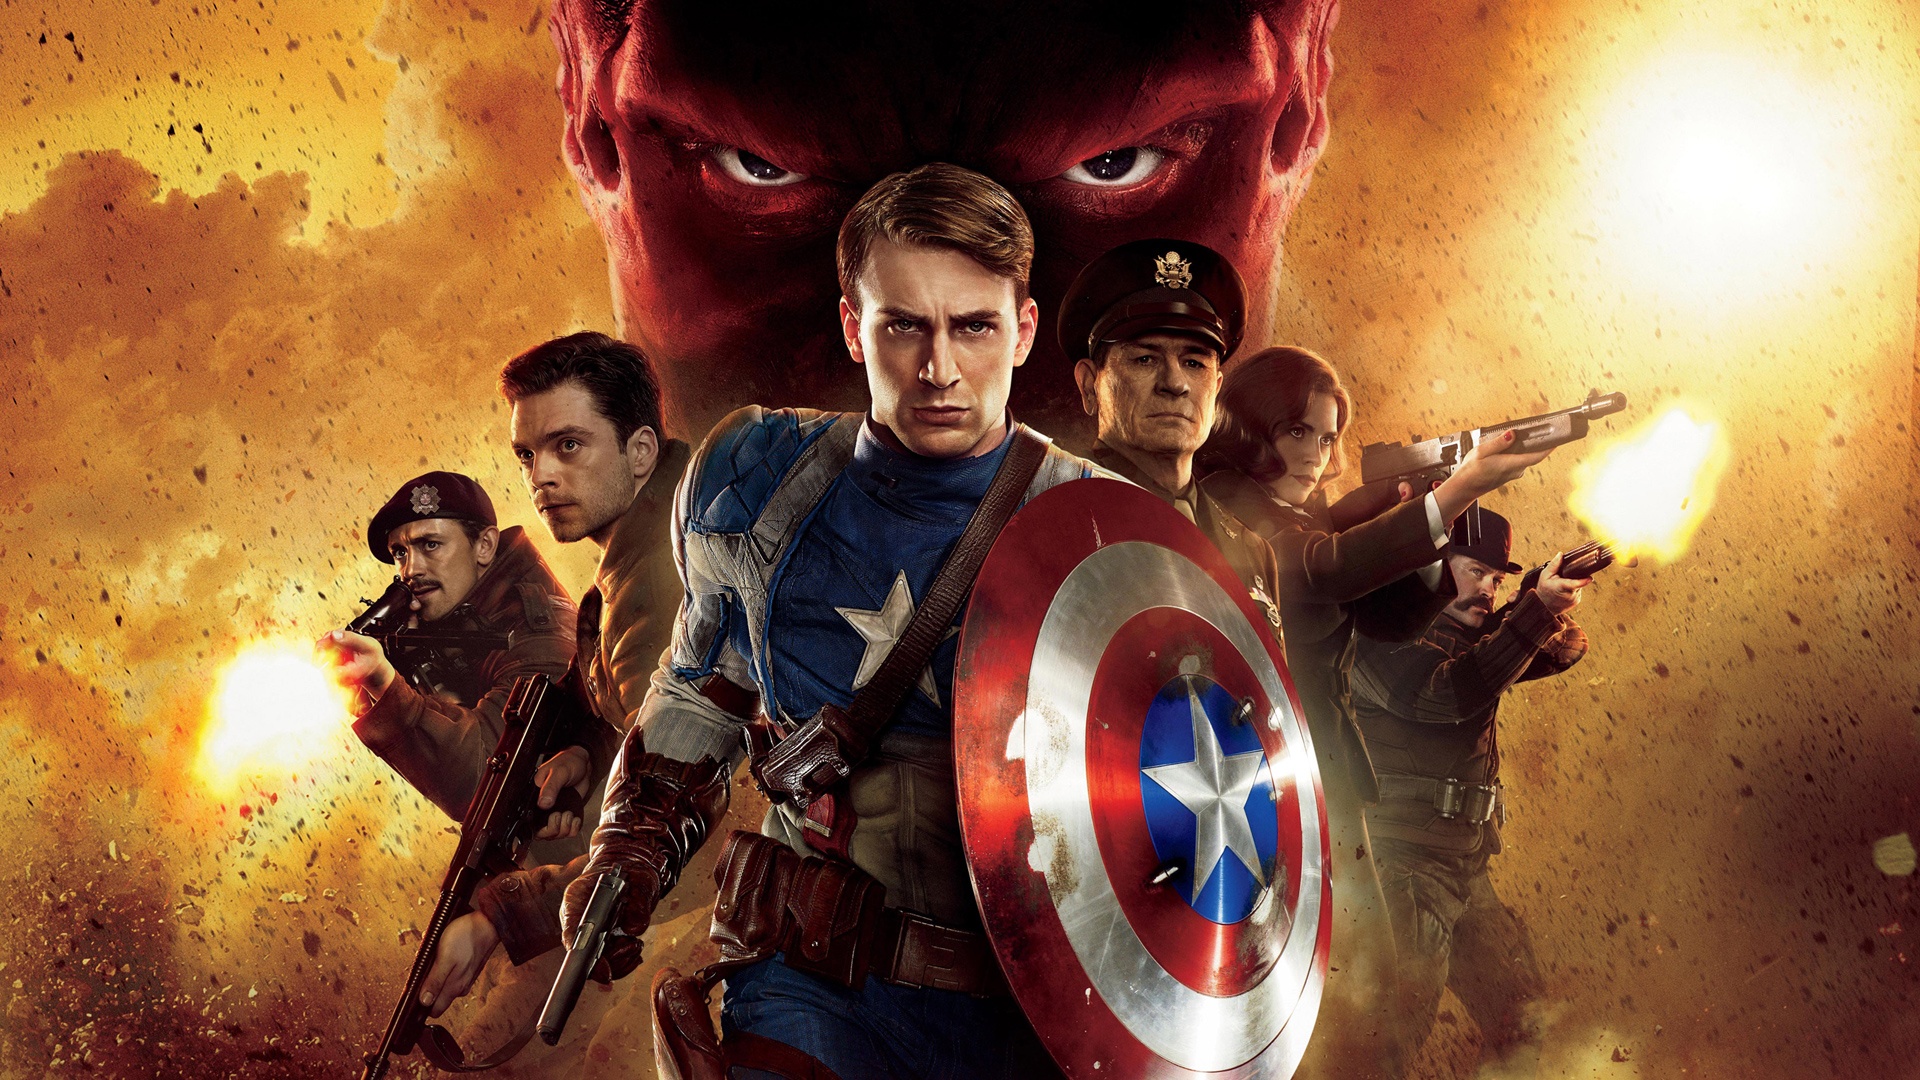 Télécharger des fonds d'écran Captain America: First Avenger HD